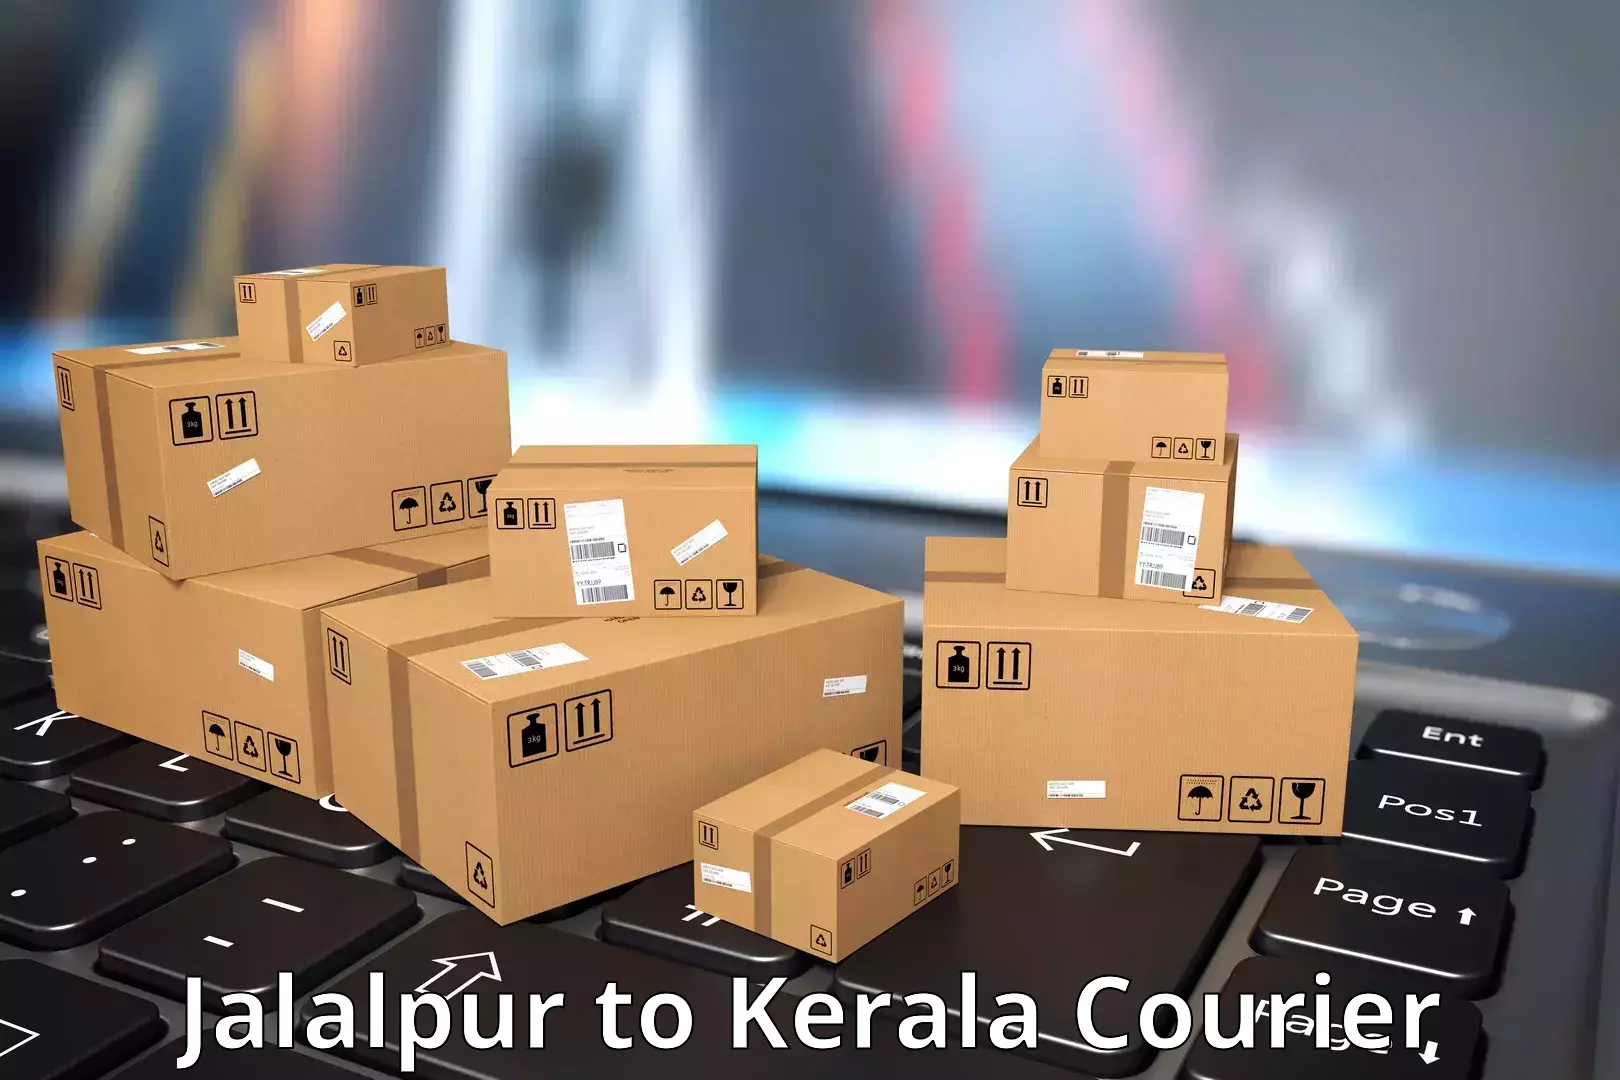 Courier service comparison Jalalpur to Kadanad